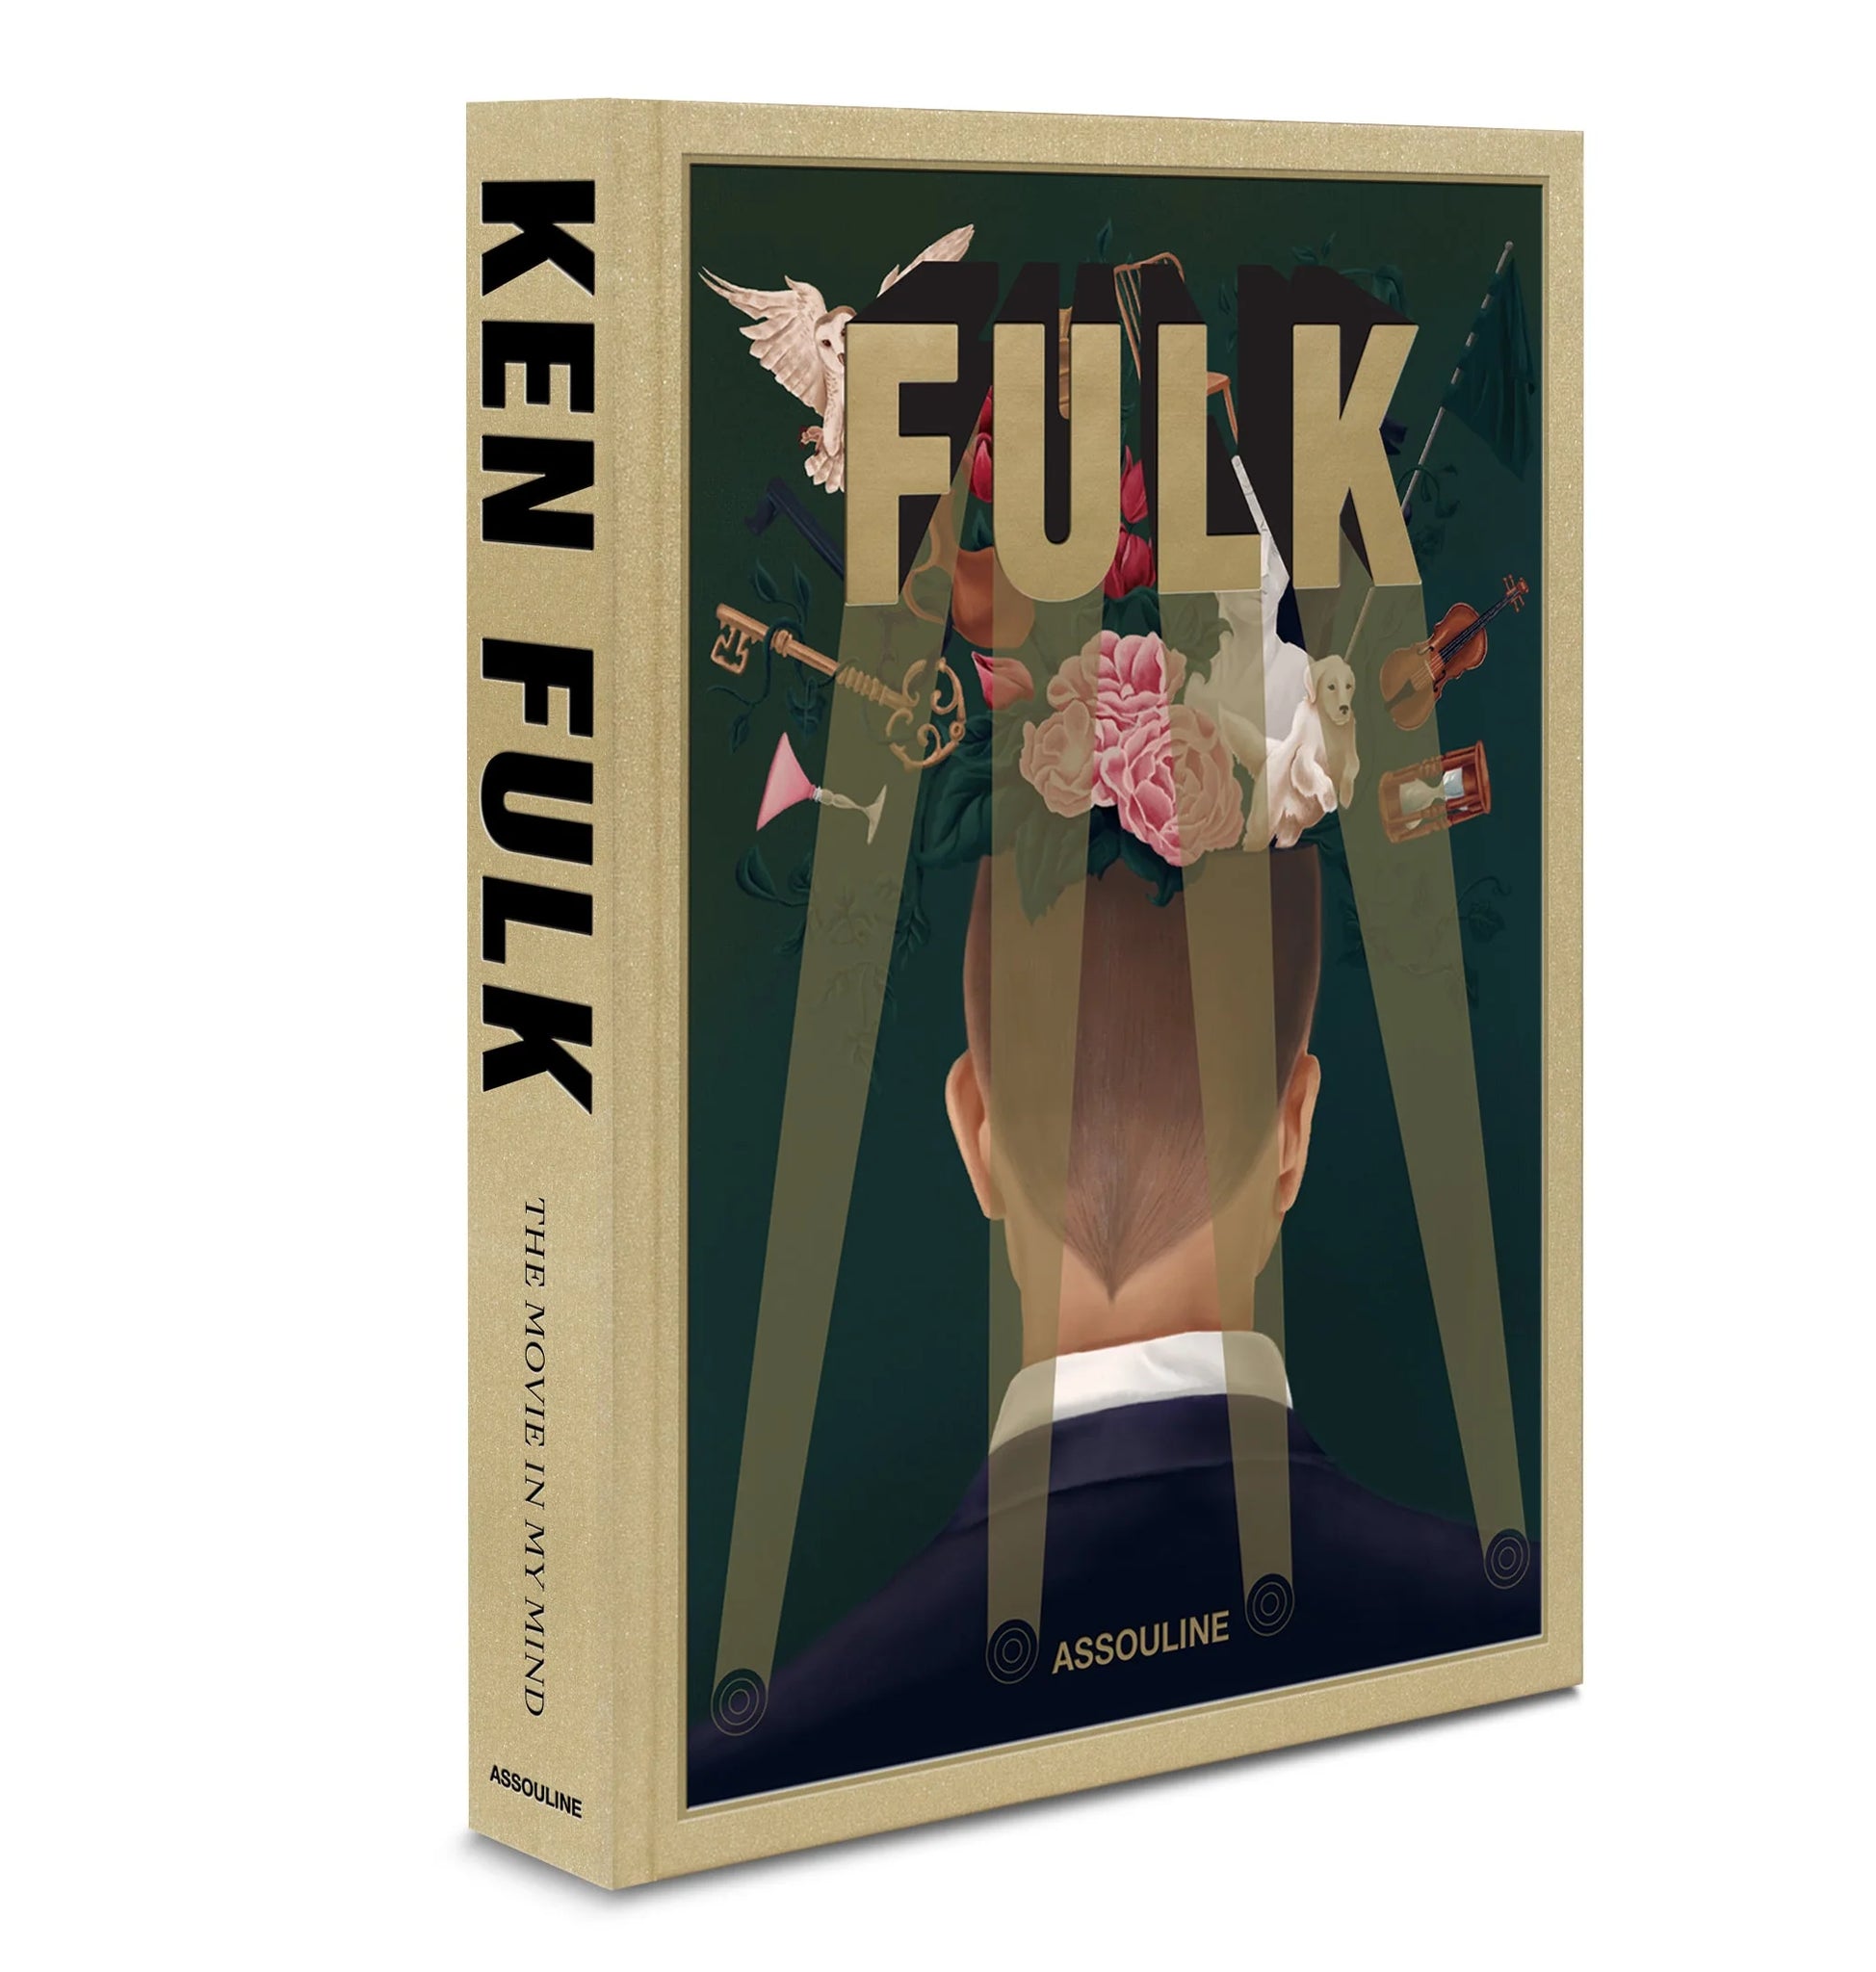 KEN FULK: THE MOVIE IN MY MIND, de la colección de libros decorativos sobre diseño de Assouline